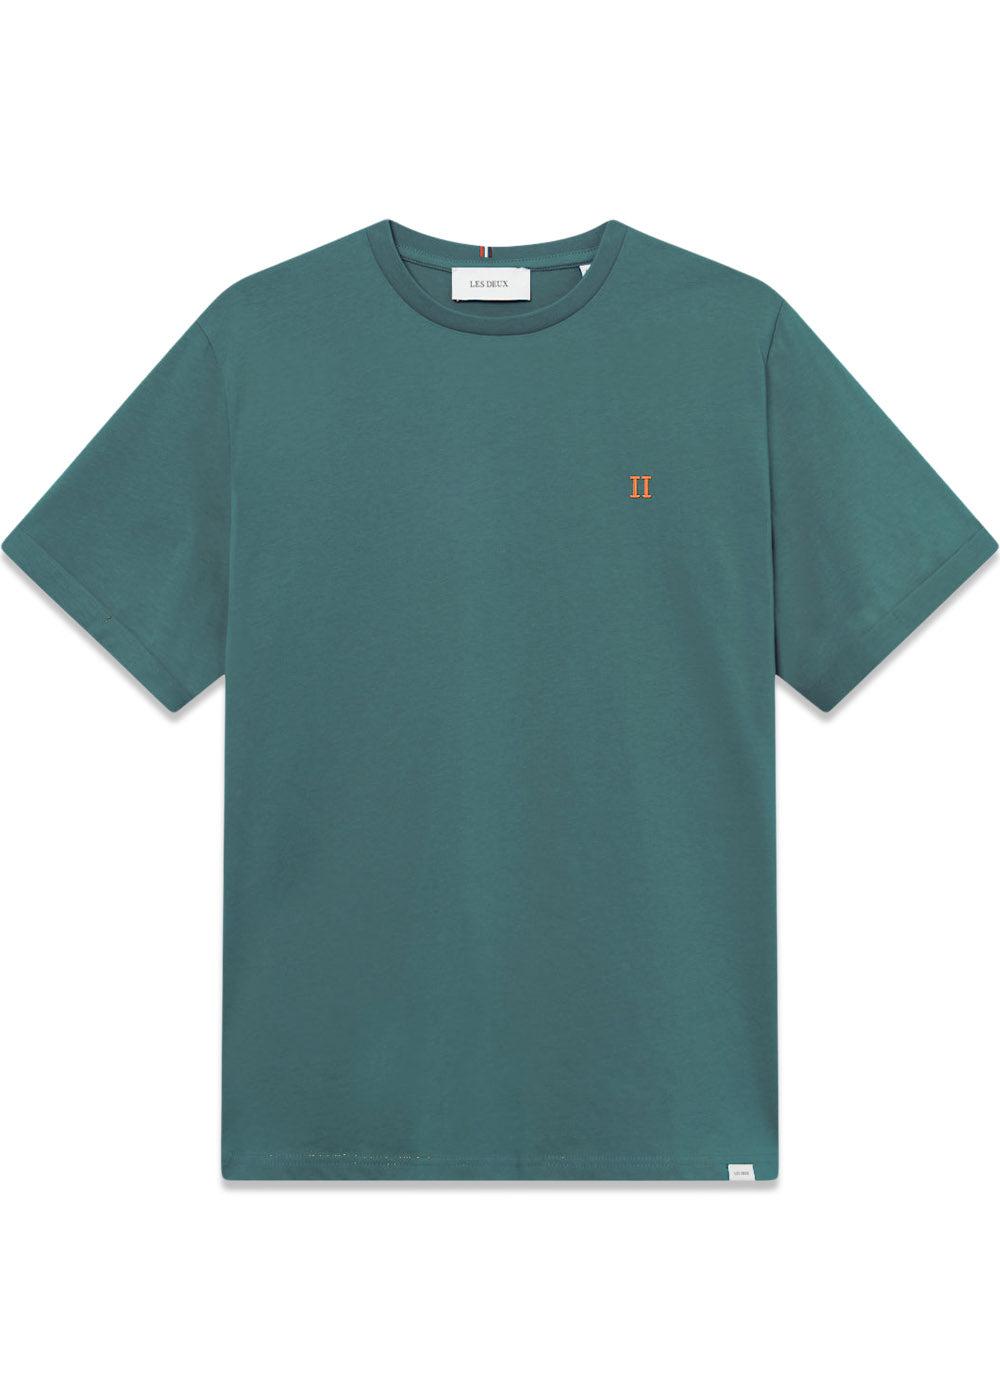 Nørregaard T-Shirt - Seasonal - Pacific Ocean/Orange